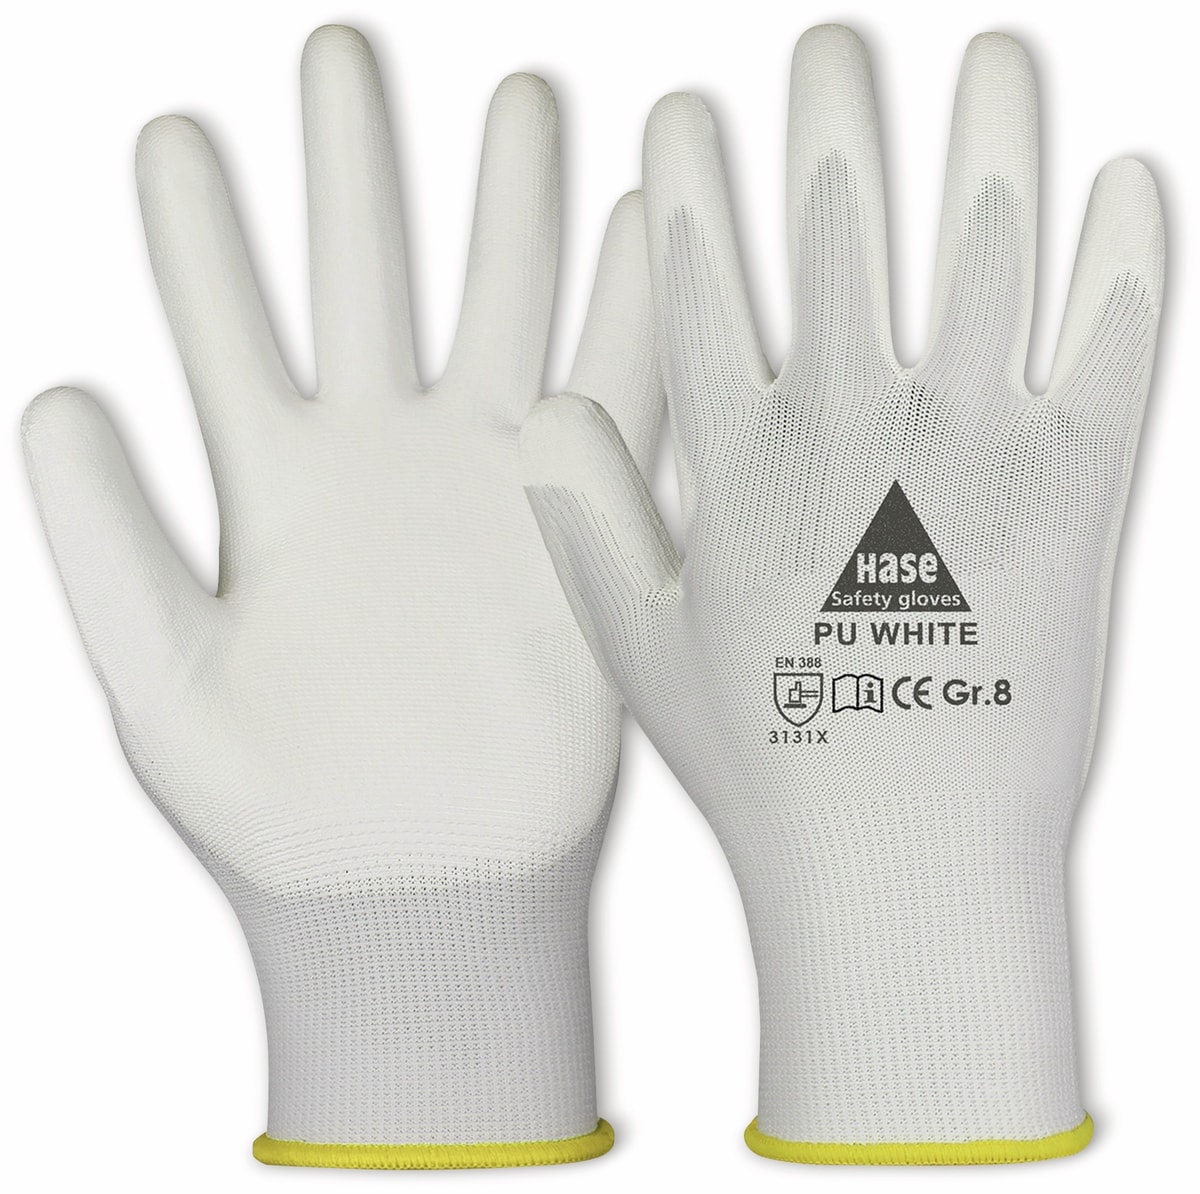 HASE SAFETY GLOVES Arbeitshandschuhe PU, PU white, EN 388, EN 420, weiß, Größe 8 von Hase Safety gloves